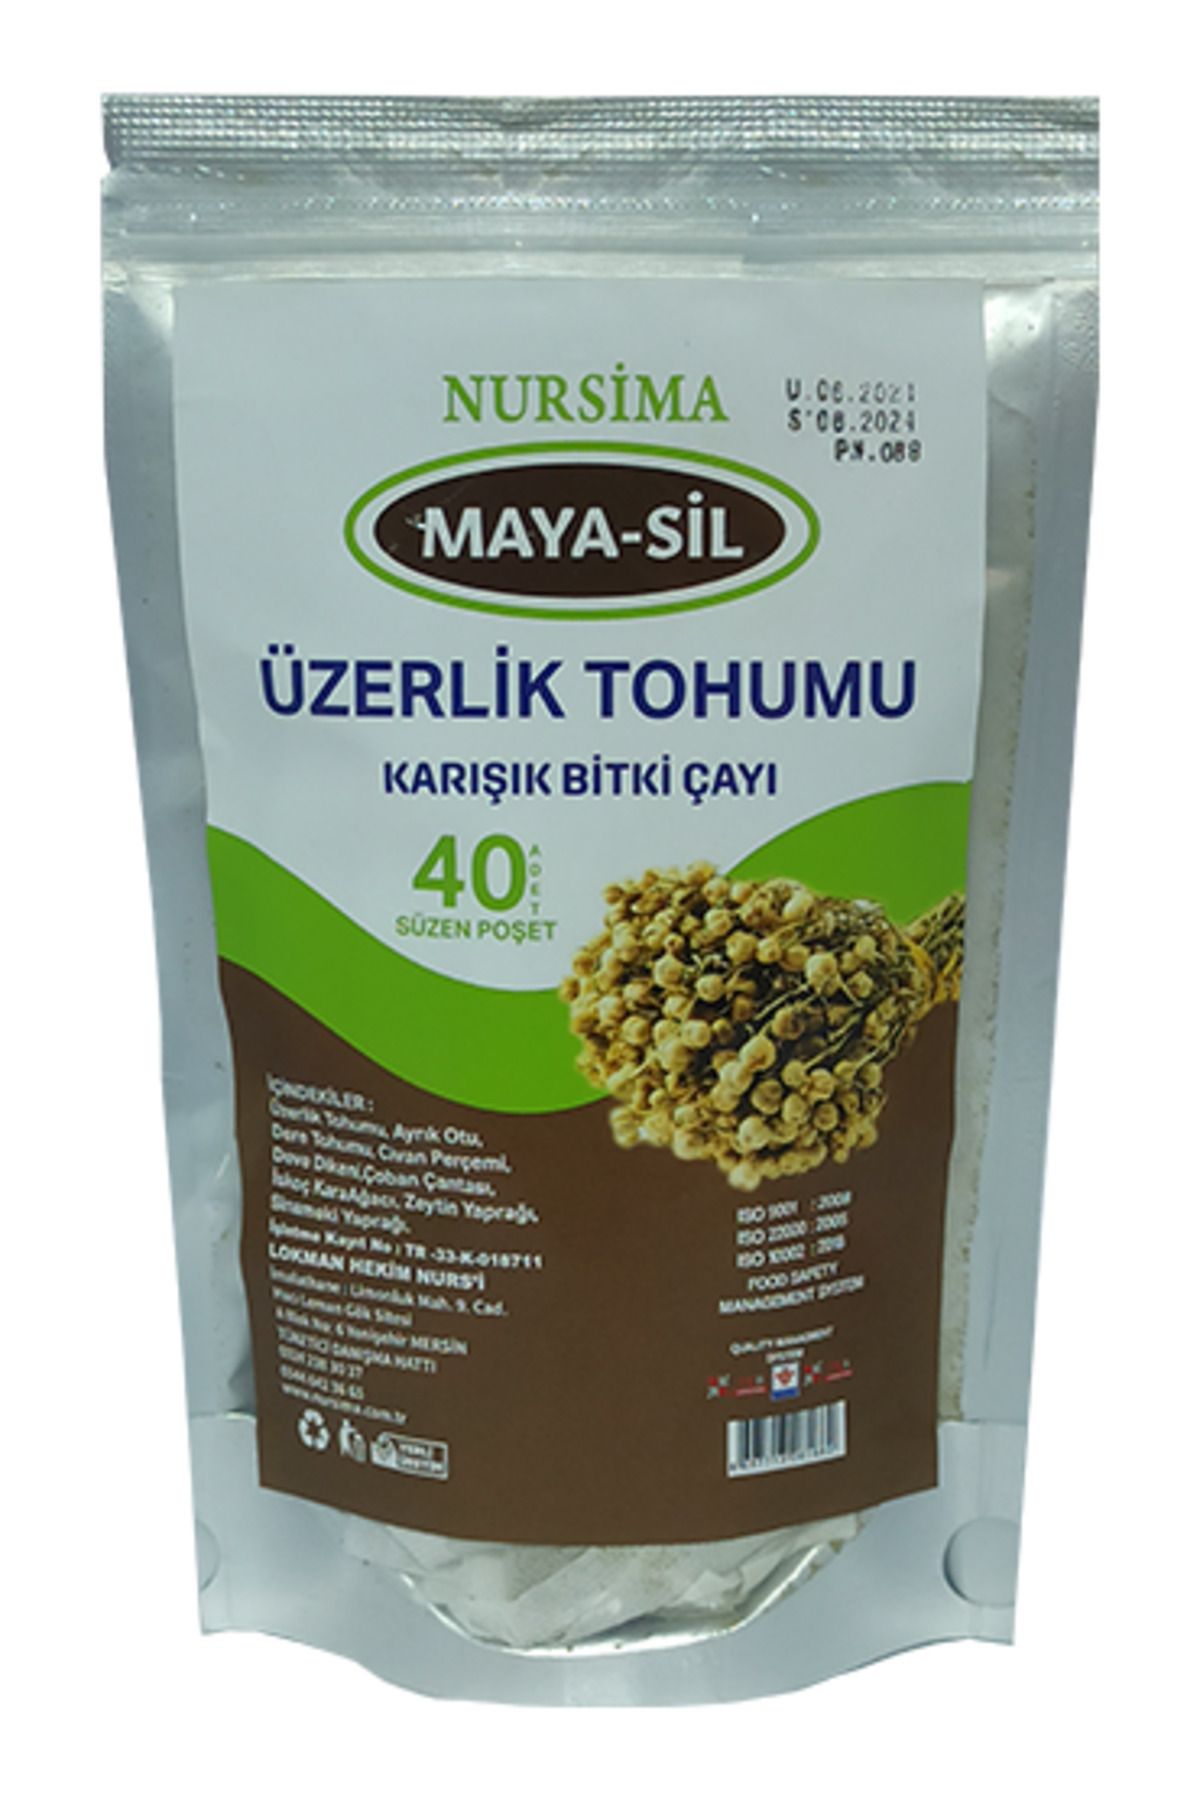 Nursima Maya sil Üzerlik Tohumu Bitki Çayı 40 'lı Süzen Poşet